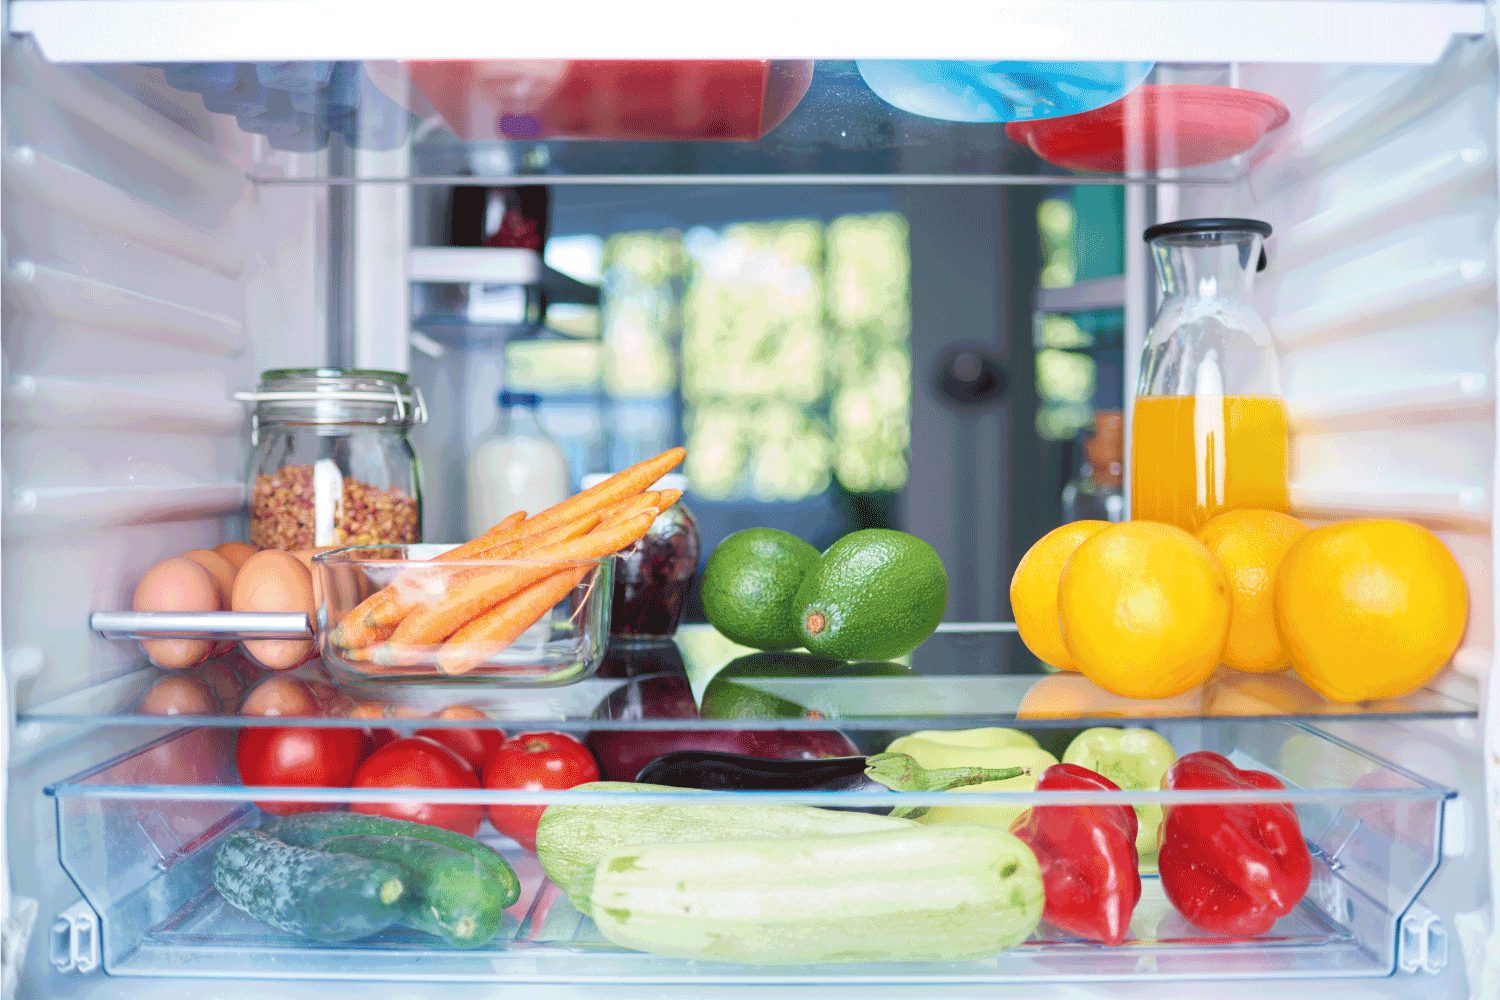 打开冰箱，从里面放满了蔬菜、水果等杂货